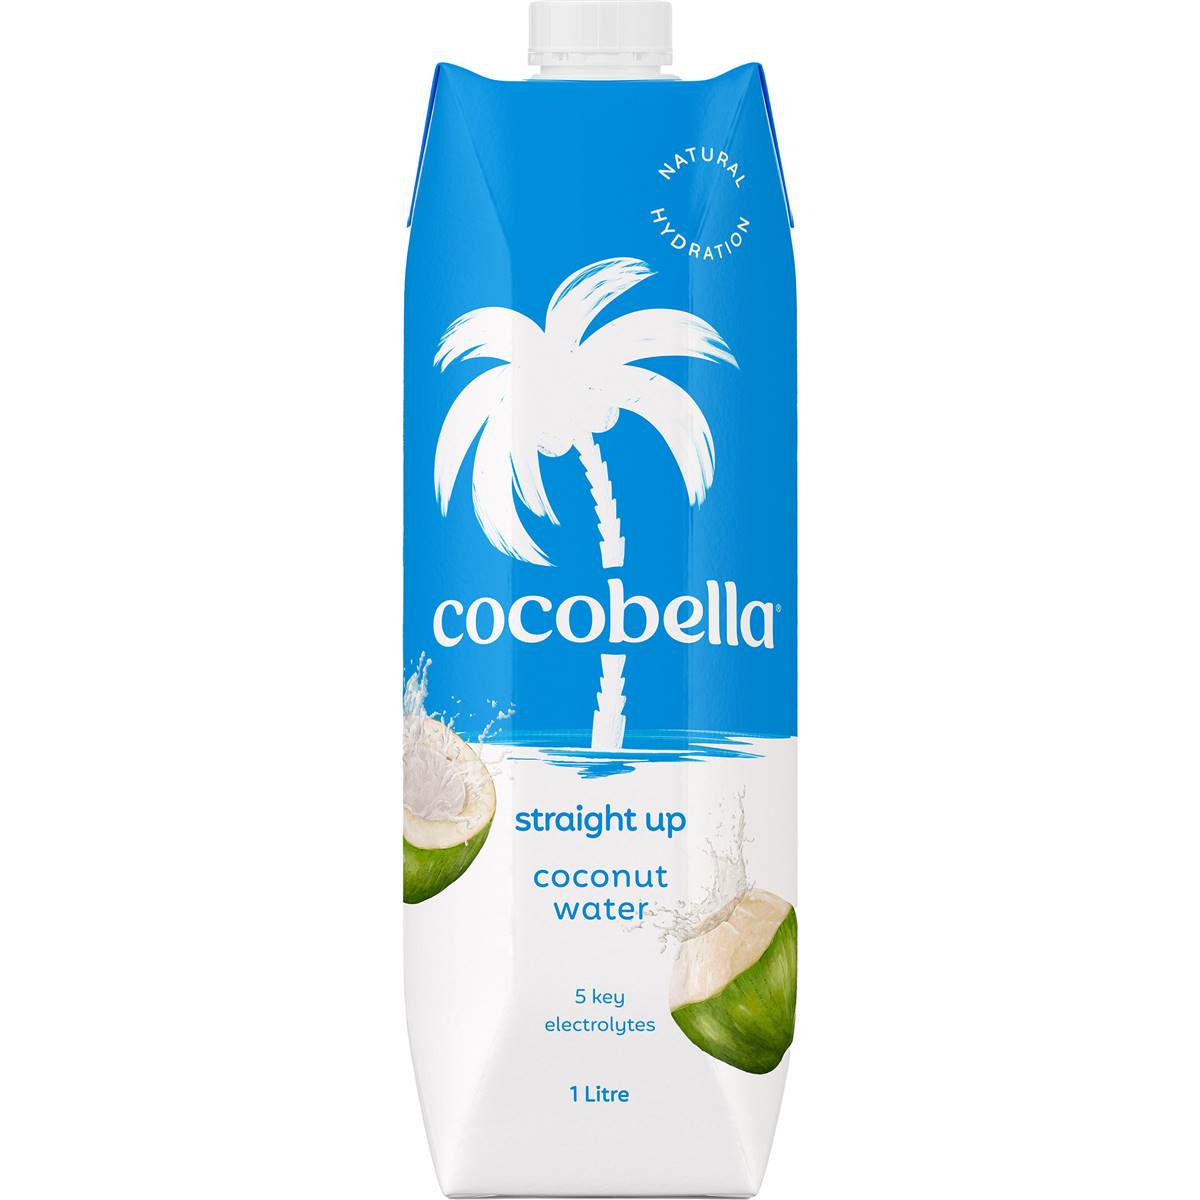 Calories in Cocobella Cocobella Straight Up Coconut Water